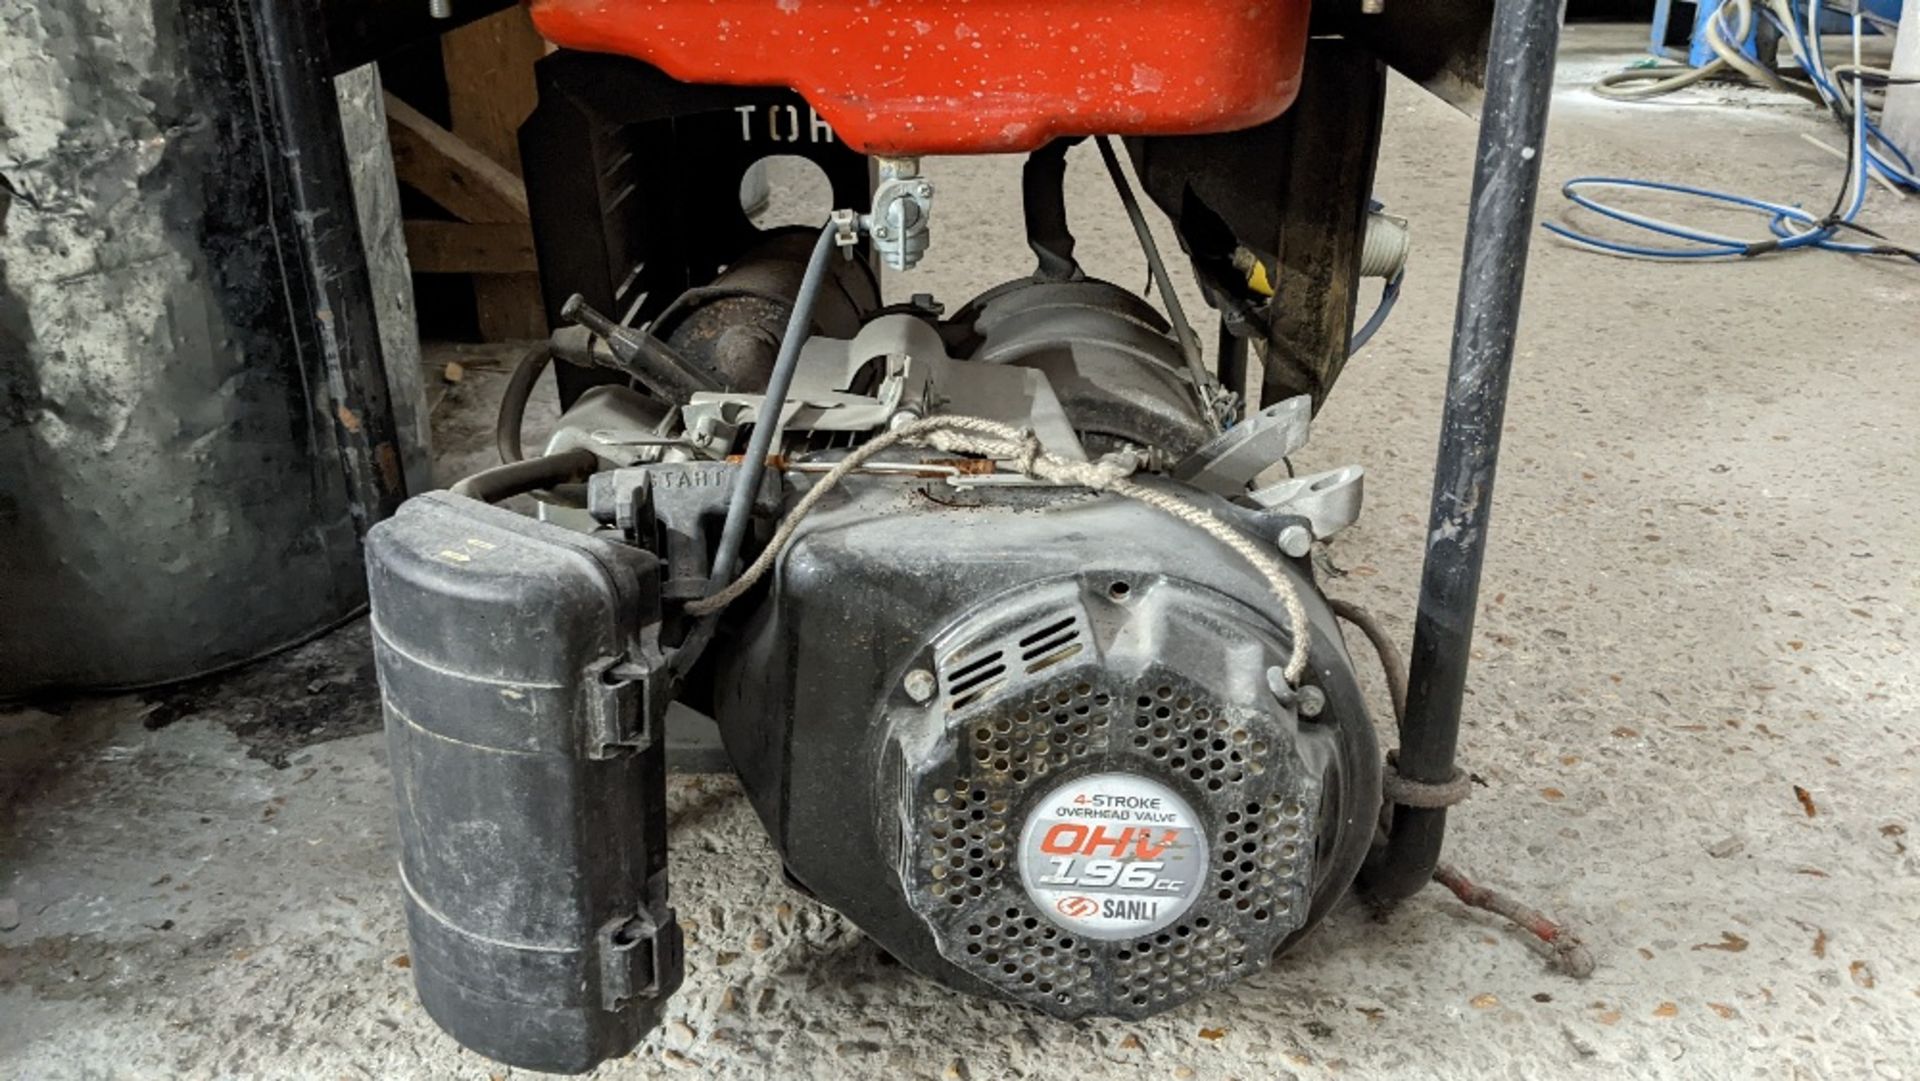 SANLI GS 2400 Petrol Generator for Spares or Repairs - Image 3 of 4